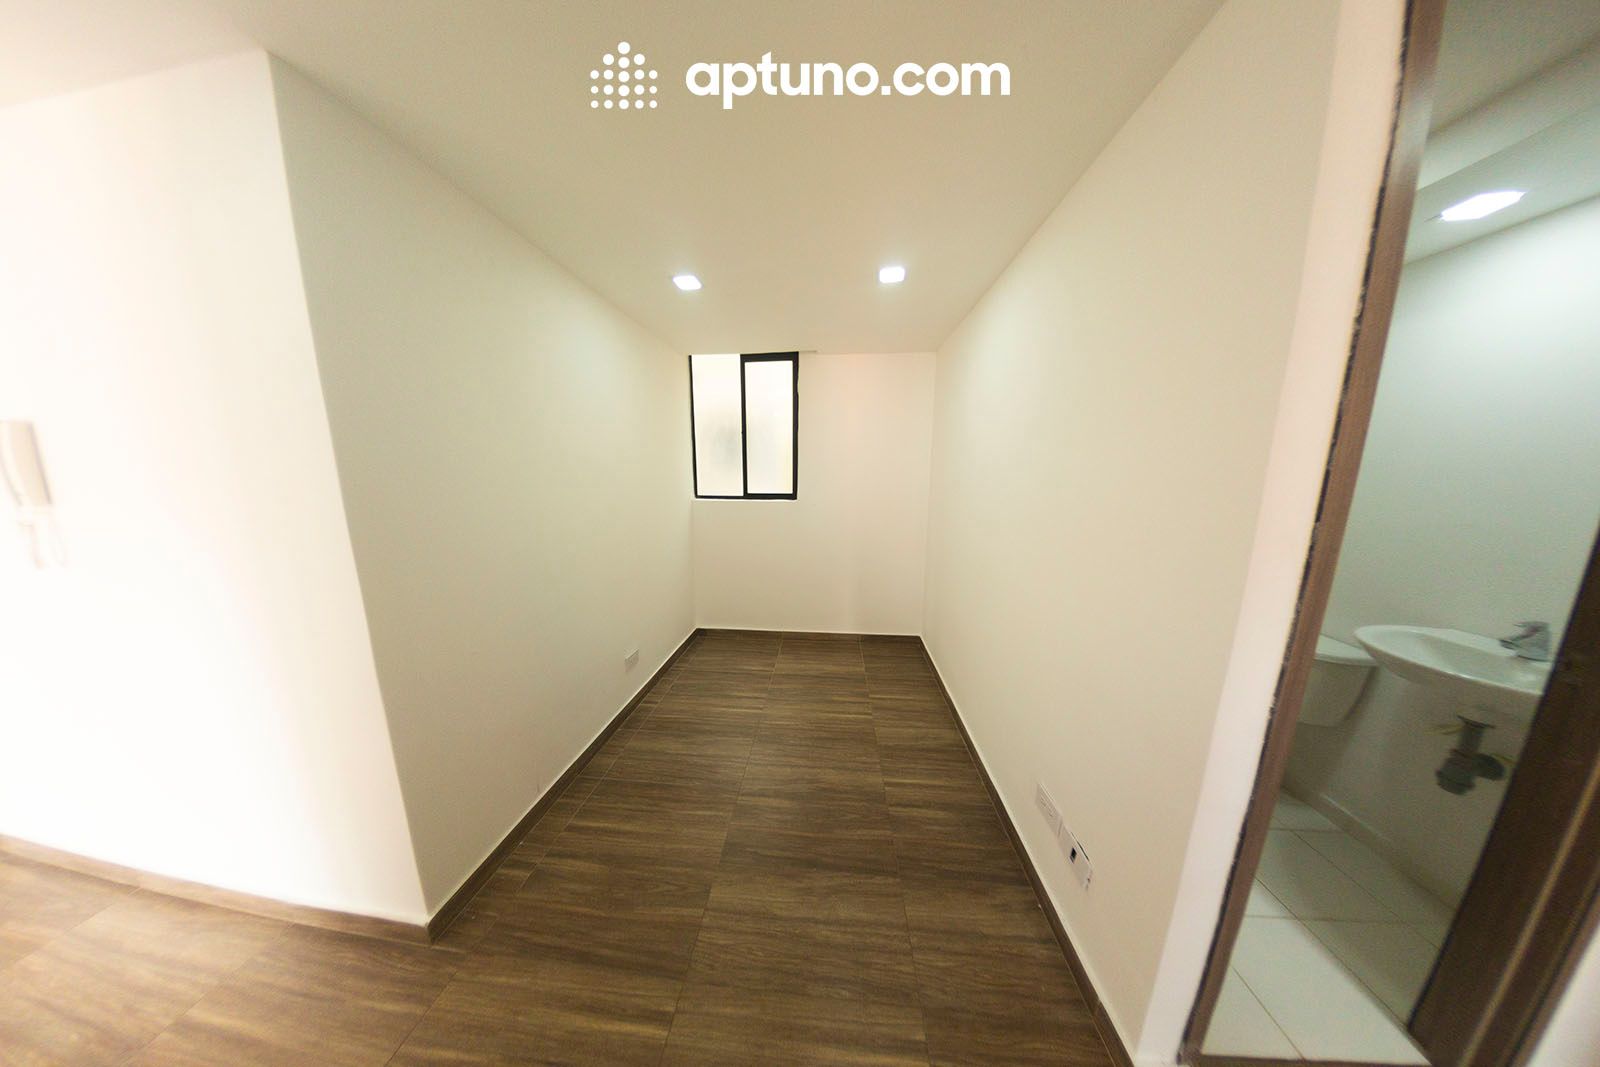 Apartamento en arriendo Madrid 64 m² - $ 820.000,00